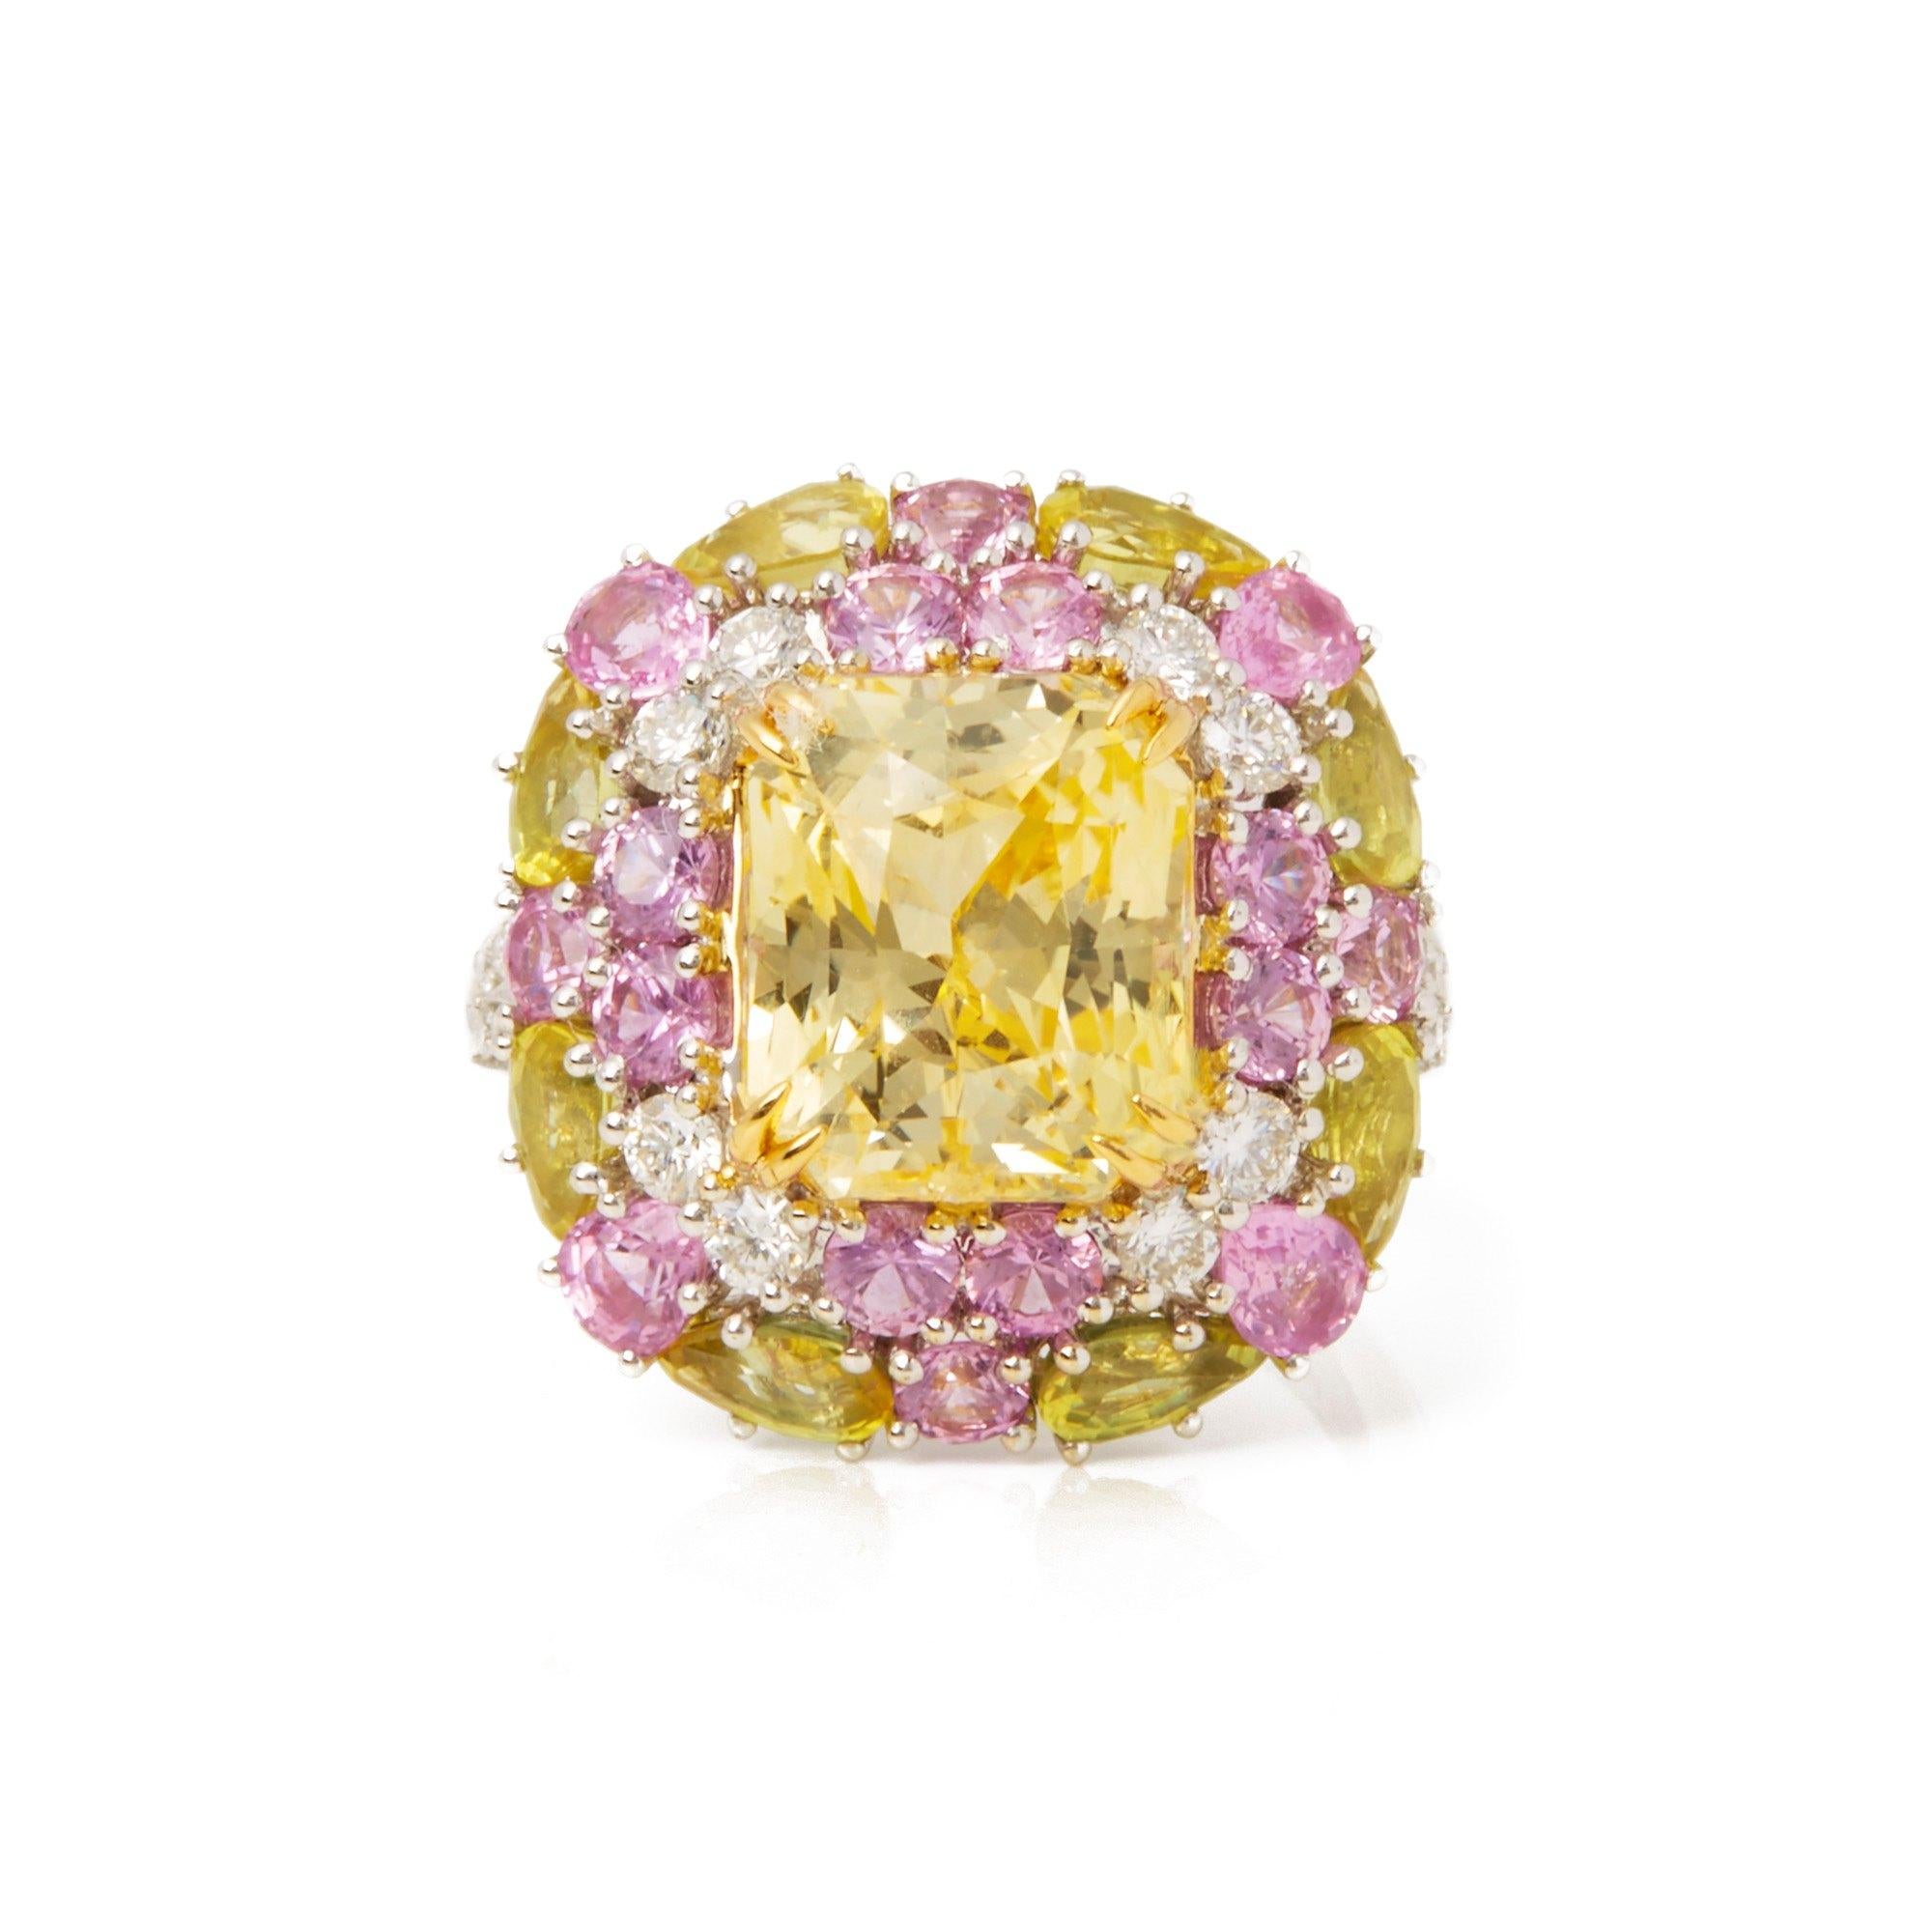 Dieser von David Jerome entworfene Ring stammt aus seiner Privatsammlung und enthält einen unbehandelten gelben Saphir mit achteckigem Scherenschliff, der in Sri Lanka gewonnen wurde. Insgesamt 8,14 Karat, besetzt mit runden Diamanten im